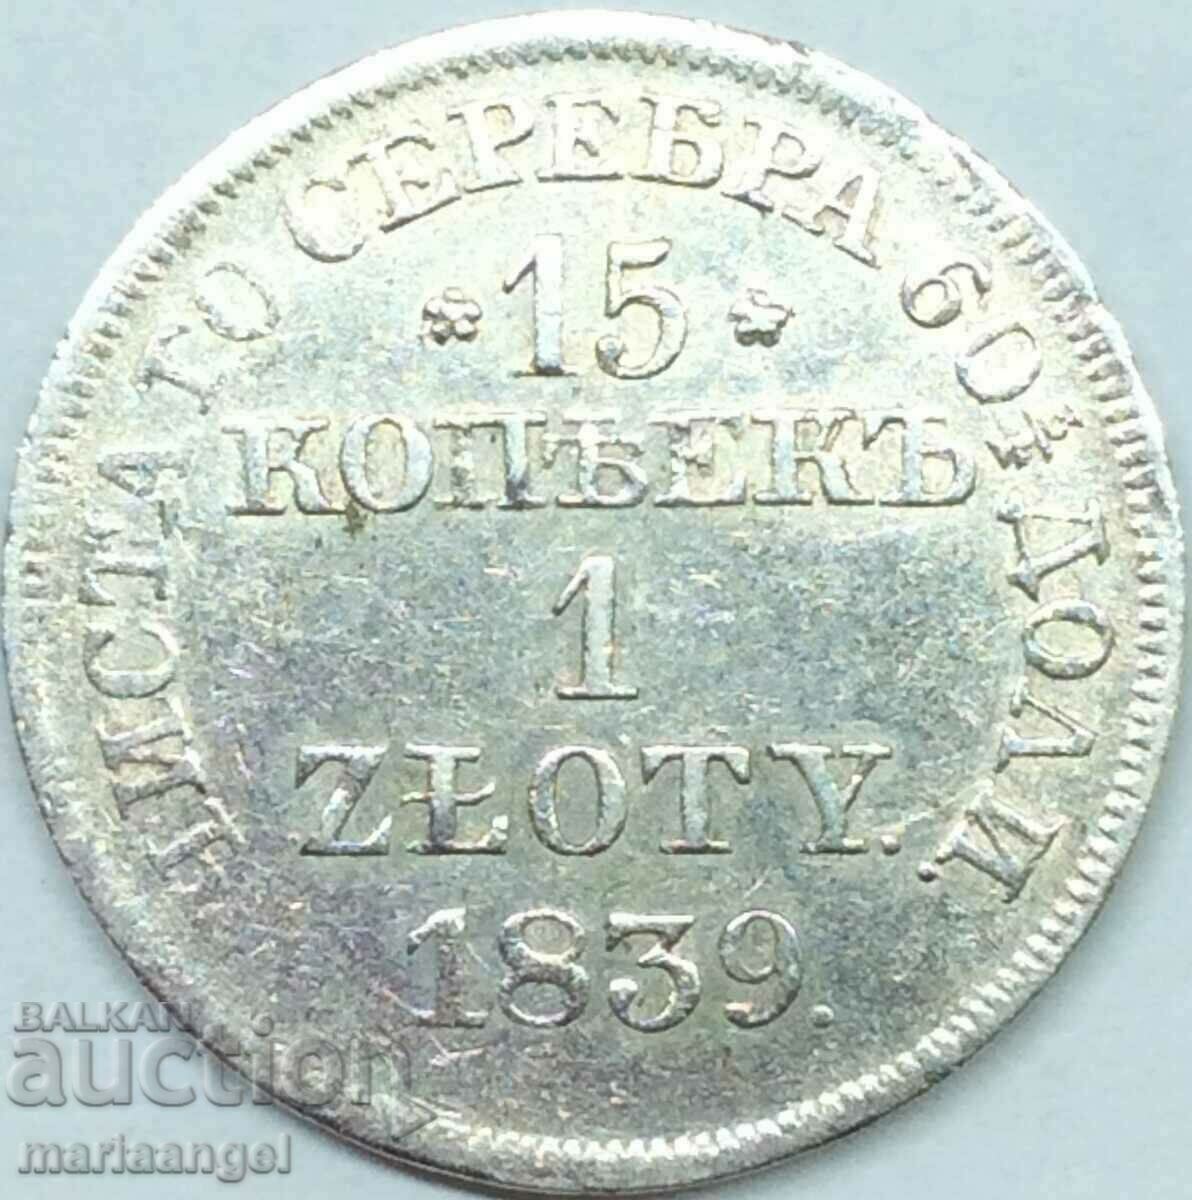 15 kopecks 1 zloty 1839 Poland Nicholas I (1825-55) Russian Tsar